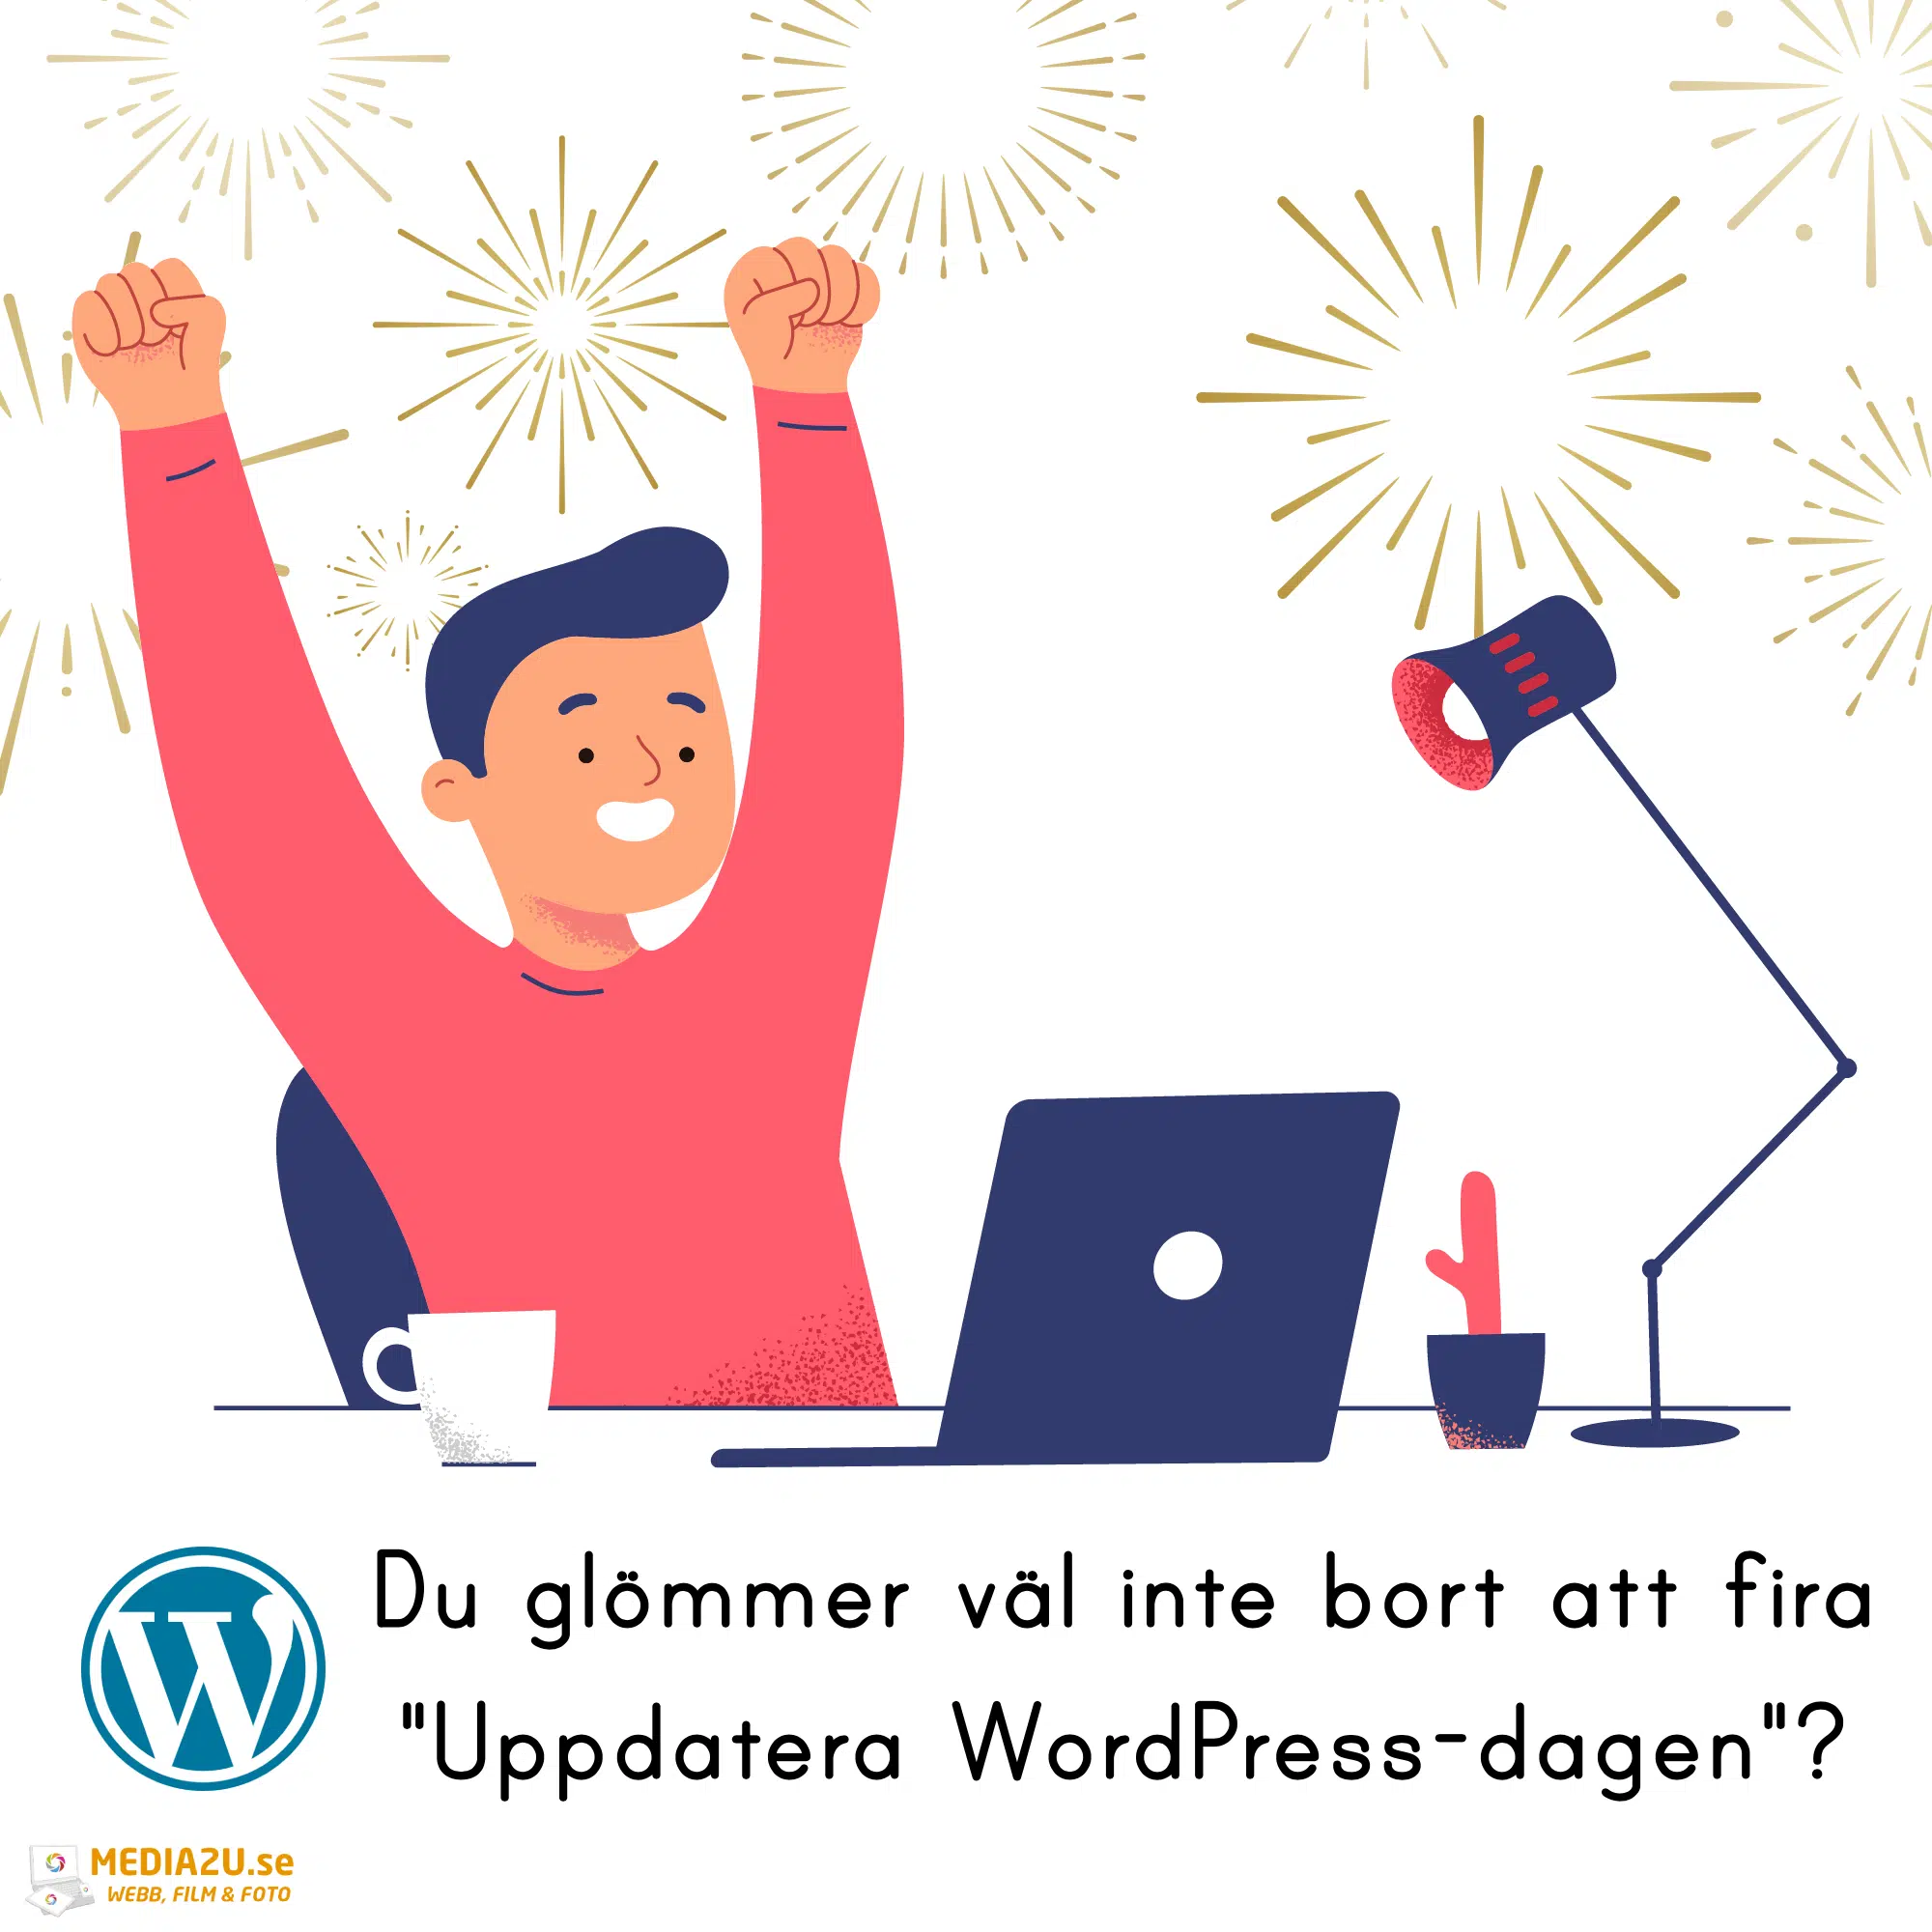 Uppdatera WordPress